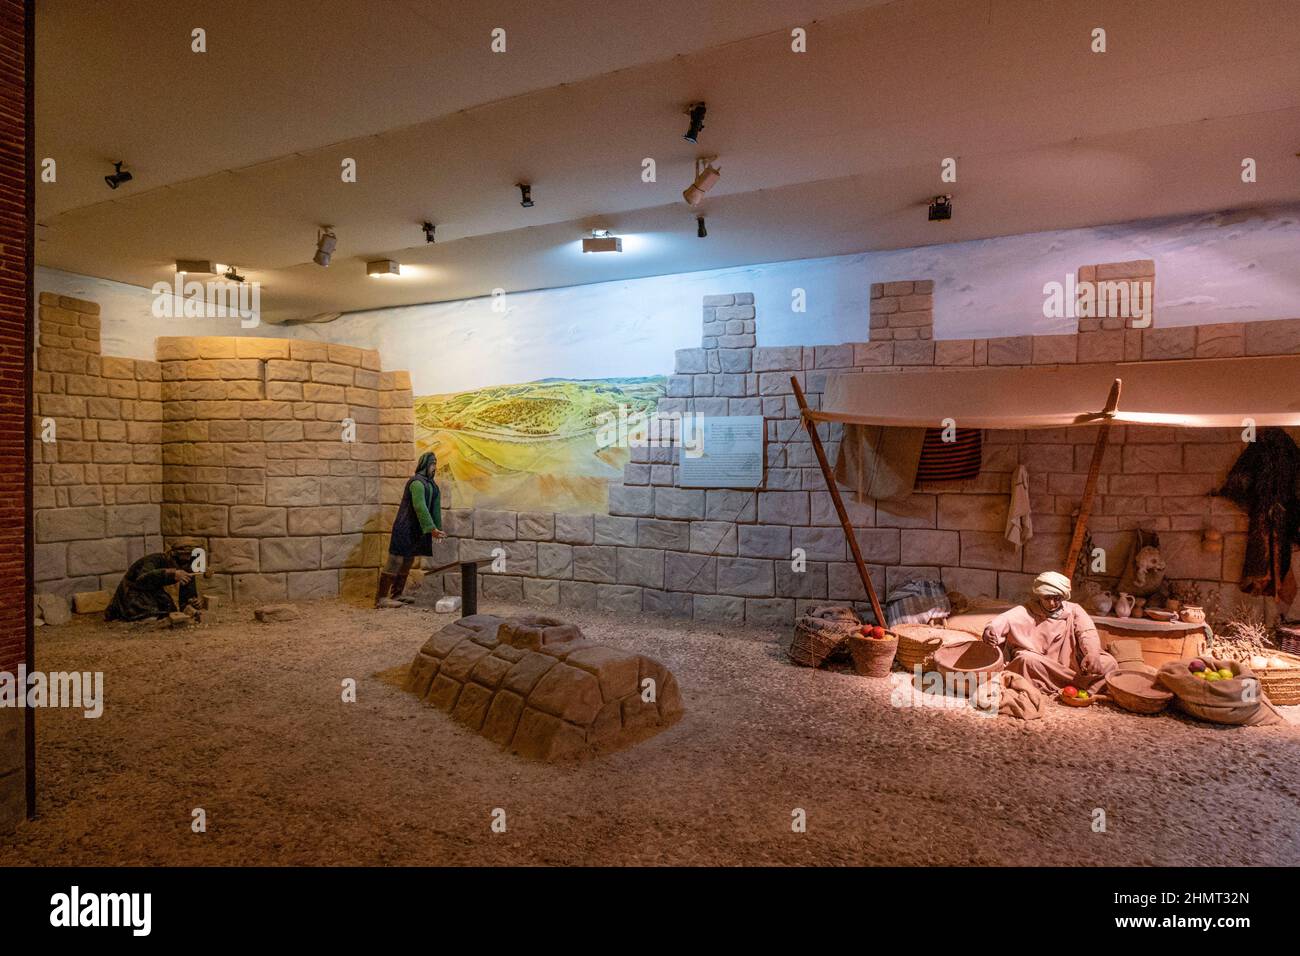 recreacion de la villa arabe, Aula arqueologica, Medinaceli, Soria,  comunidad autónoma de Castilla y León, Spain, Europe Stock Photo